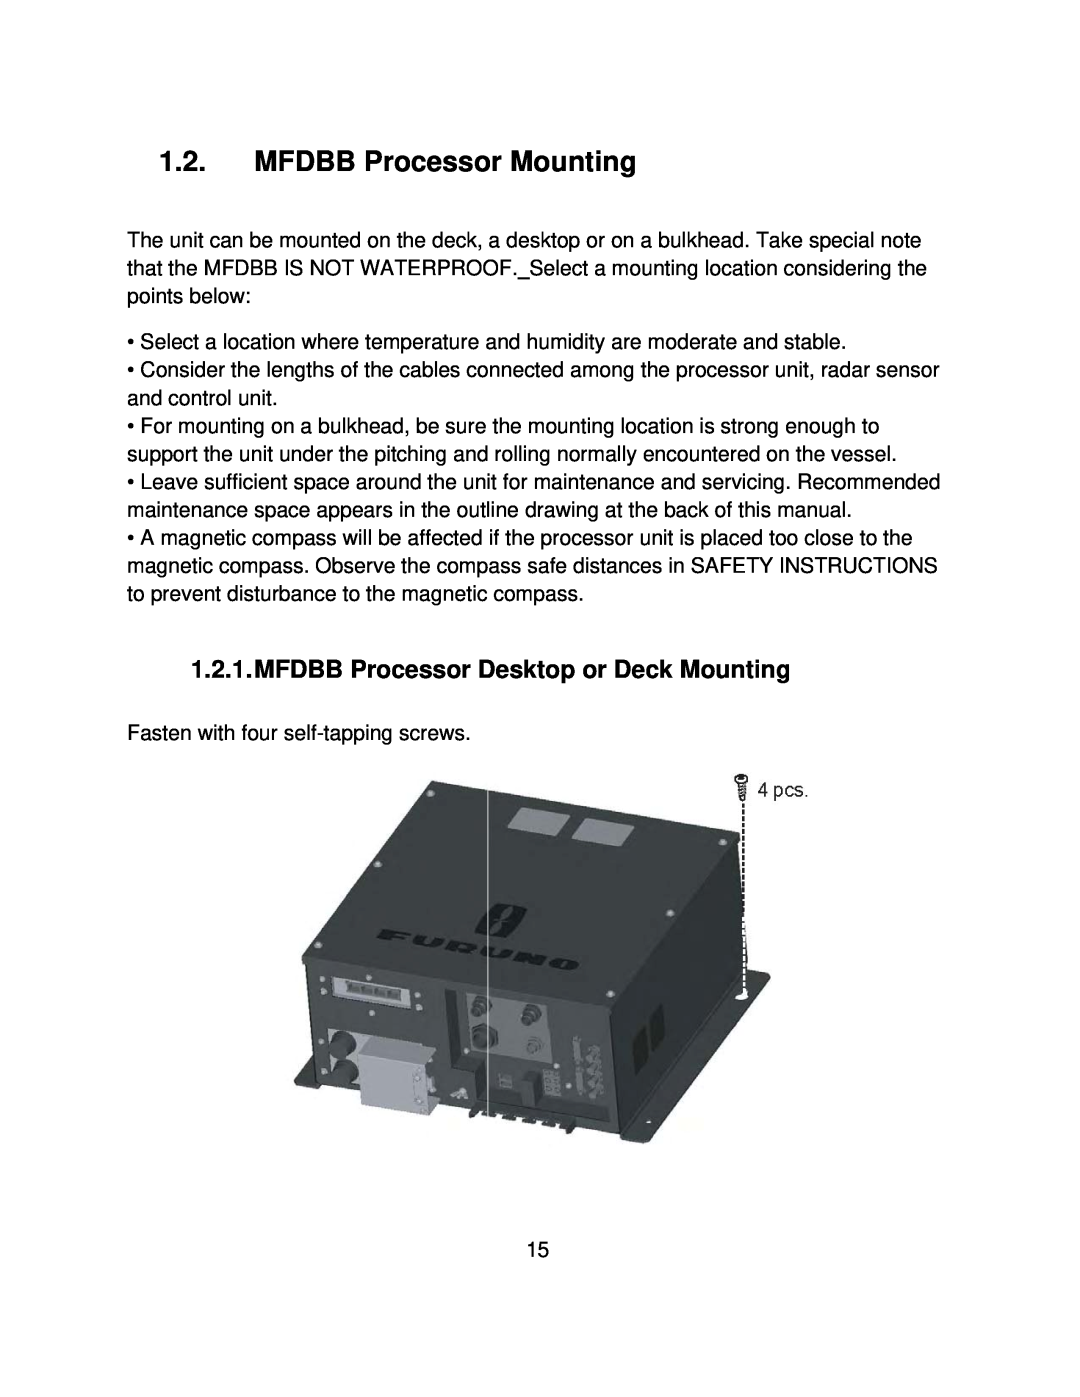 Furuno MFD8/12/BB manual MFDBB Processor Mounting, MFDBB Processor Desktop or Deck Mounting 